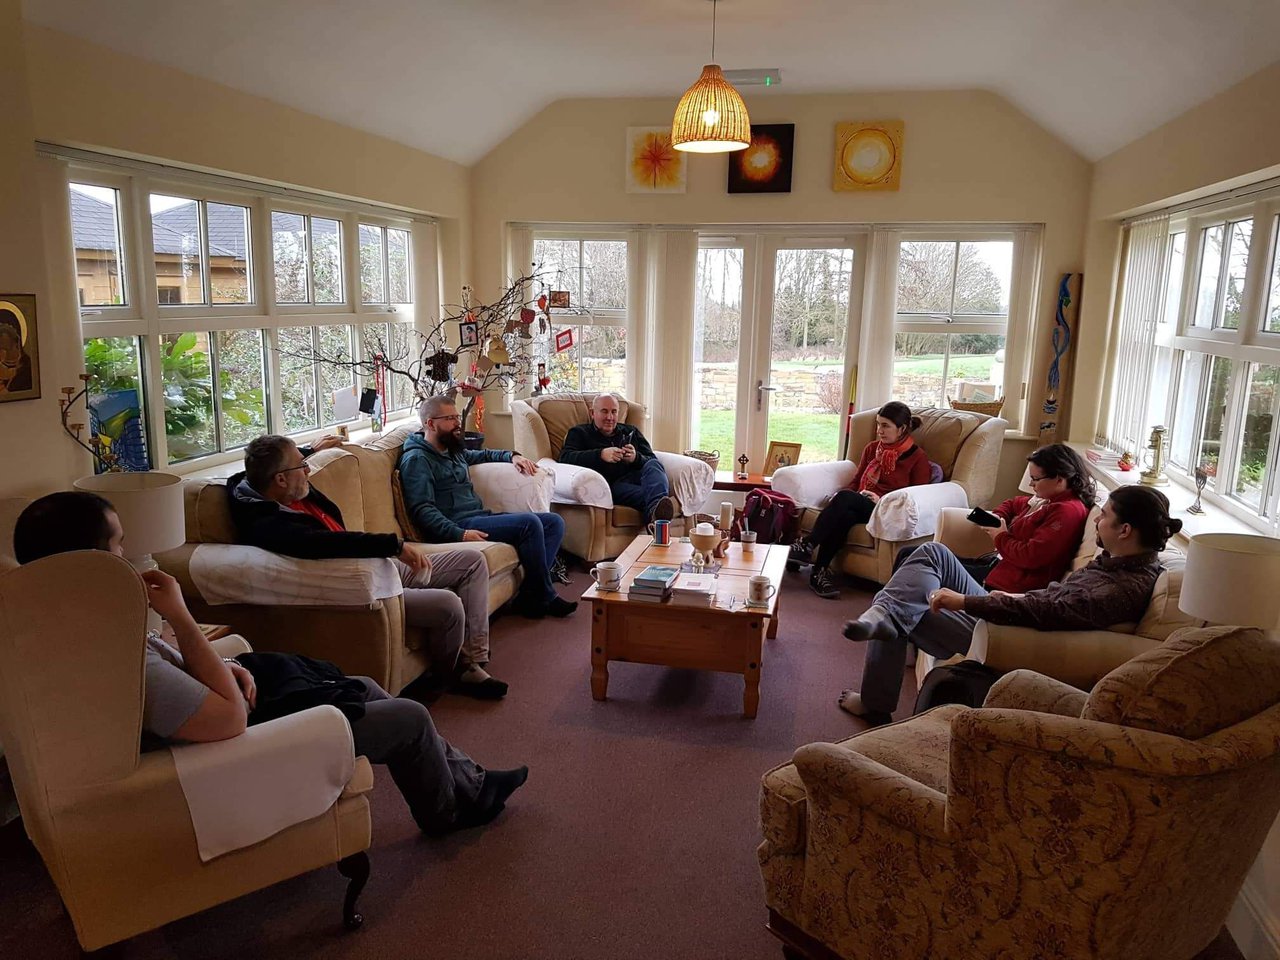 Beszélgetés a nappaliban a Northumbria közösség egyik alapítójával, Roy-jal